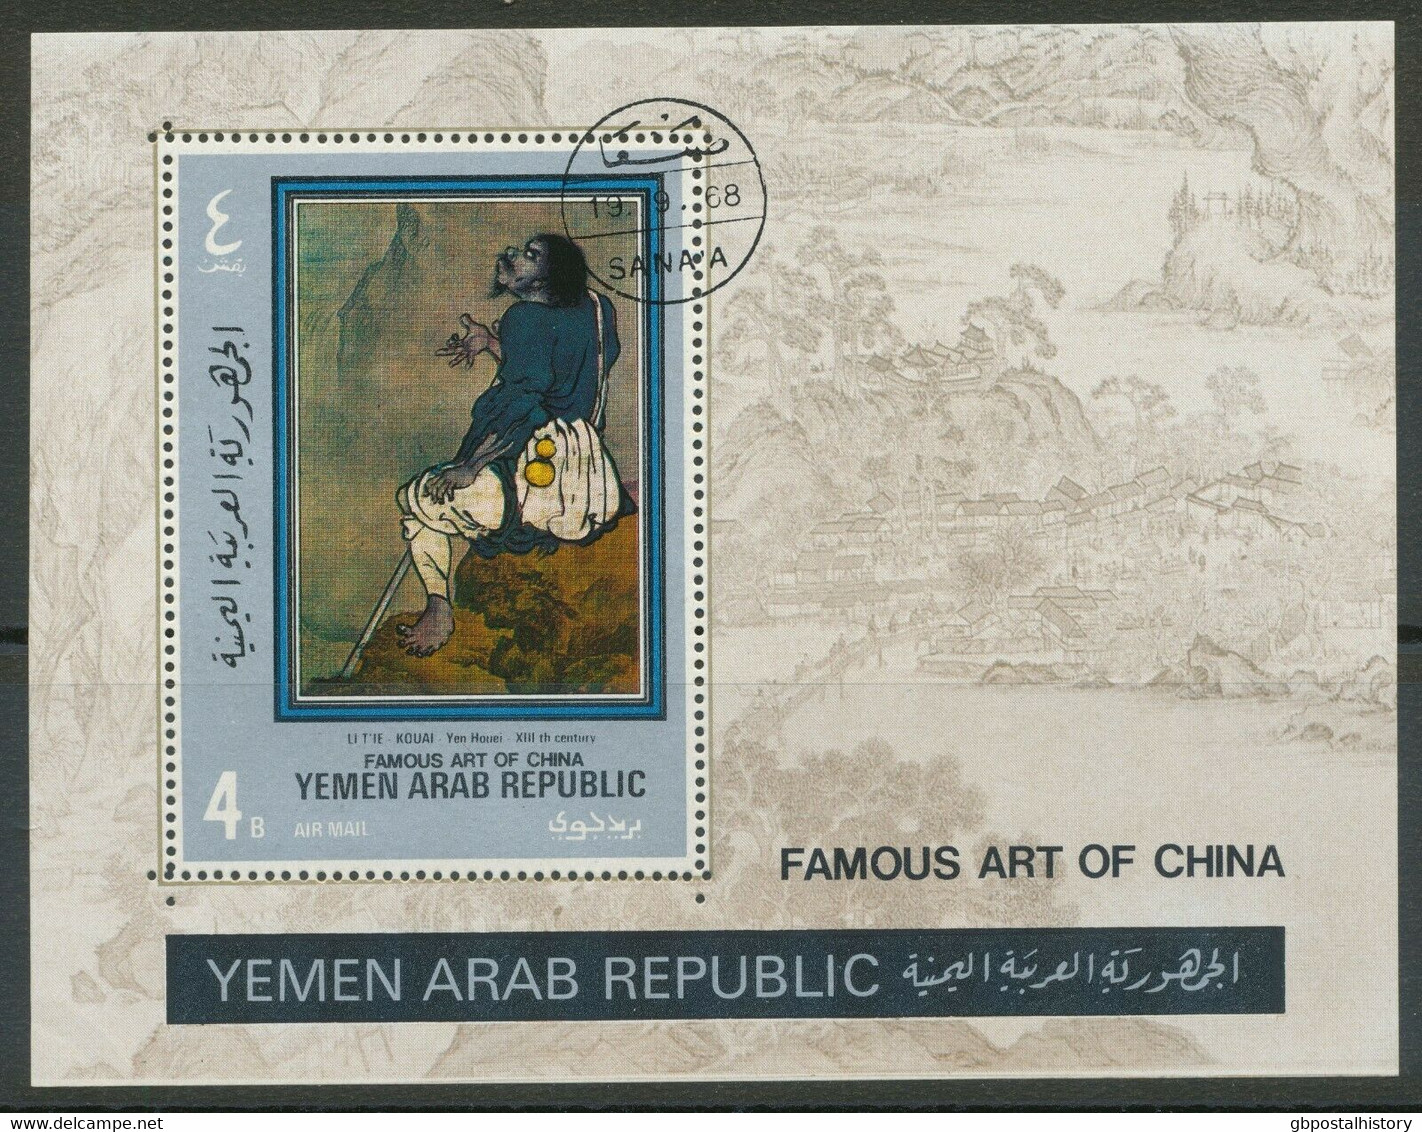 REPUBLIC OF YEMEN 1968 Famous Art Of China 4 B. Painting VFU MS MAJOR VARIETY - Yemen